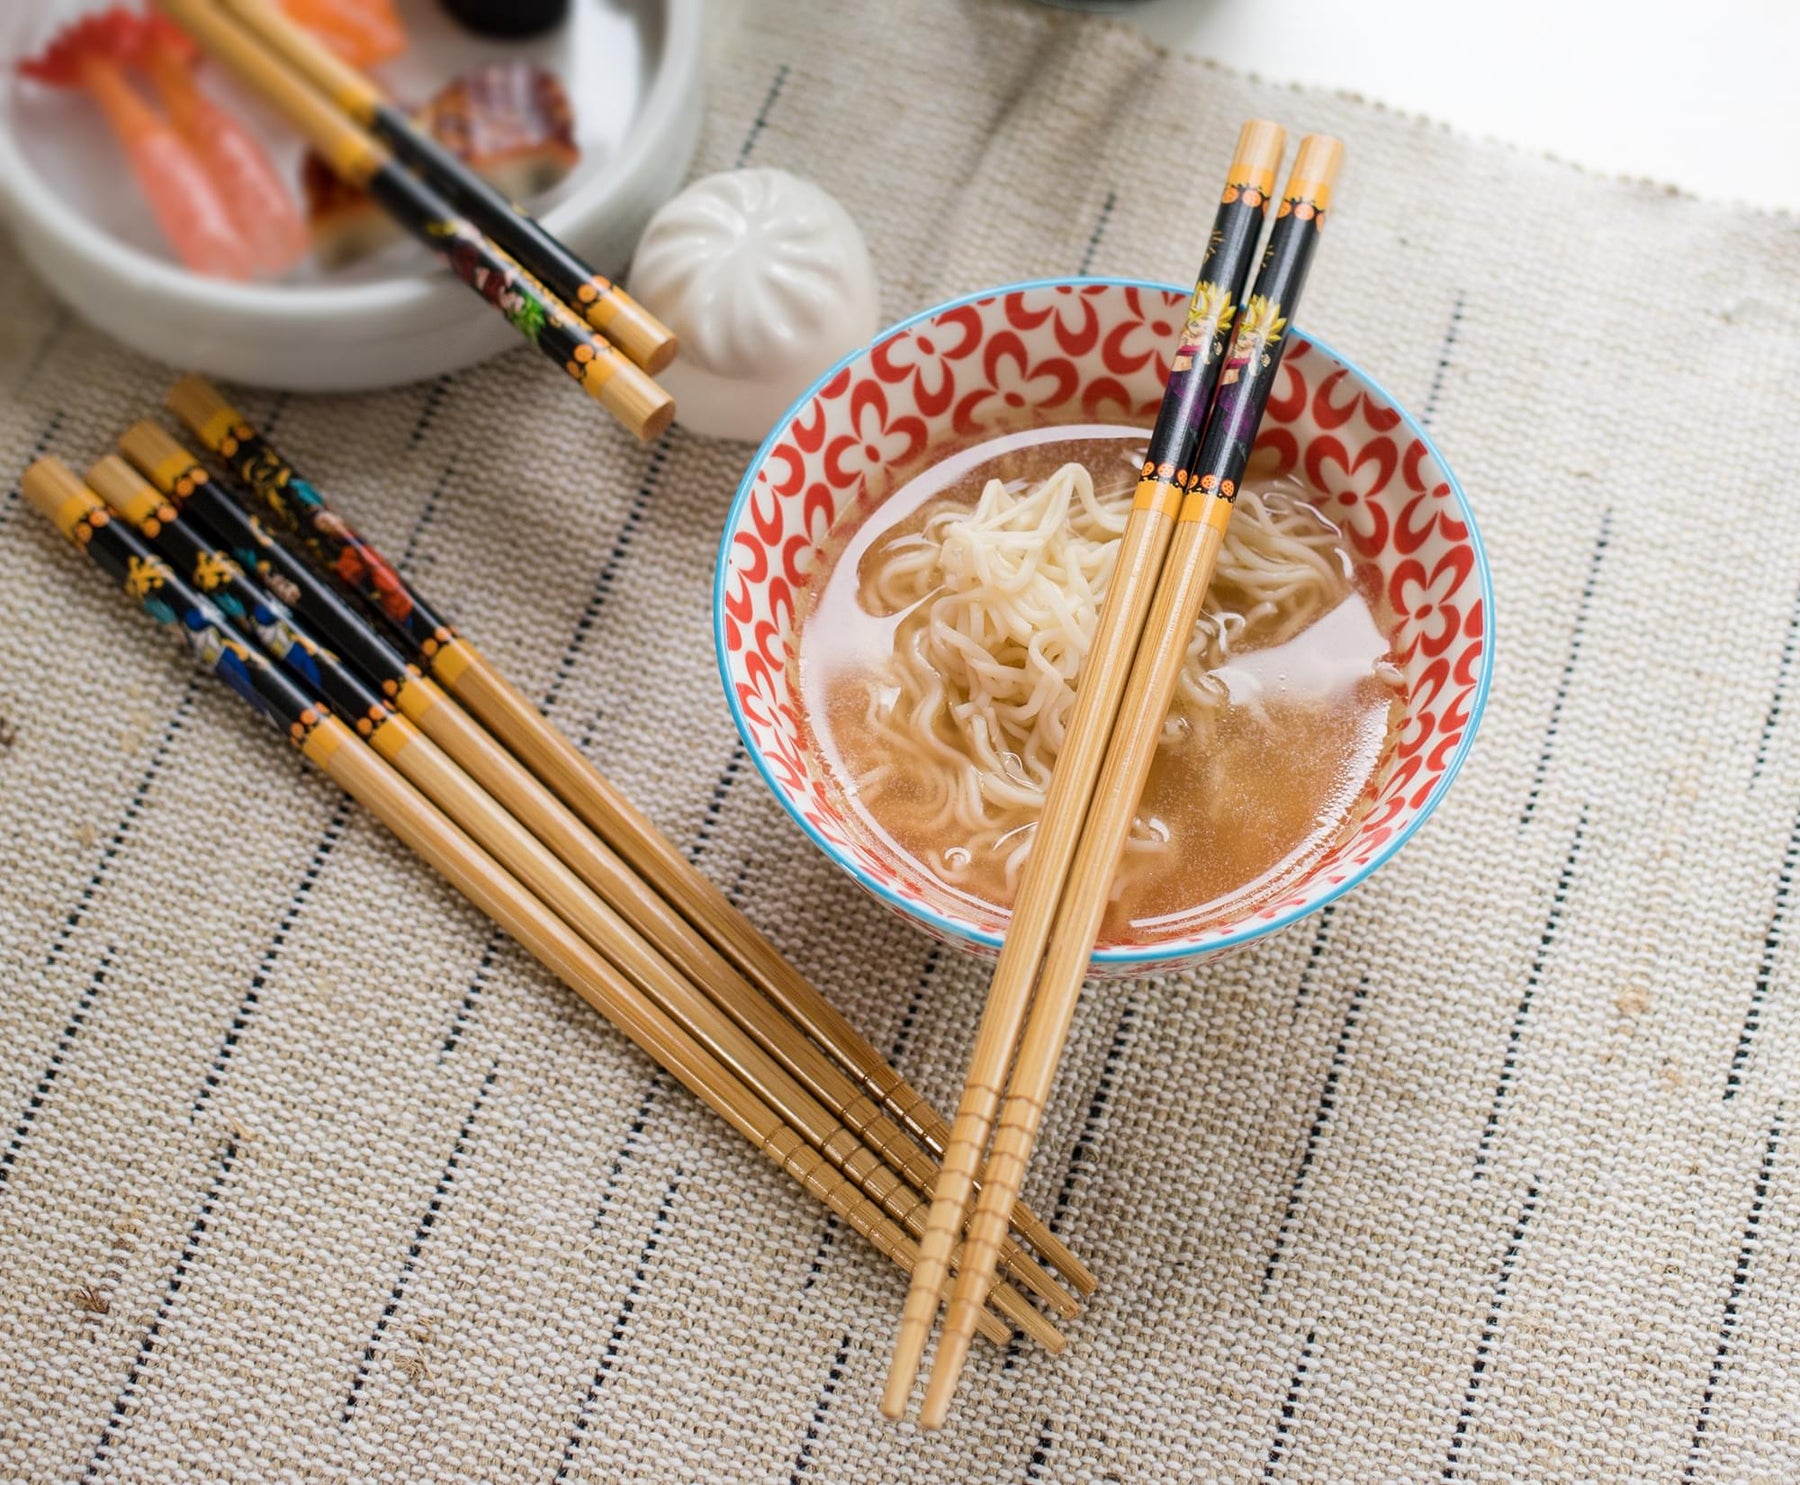 Dragon Ball Super Bamboo Chopsticks | Set of 4